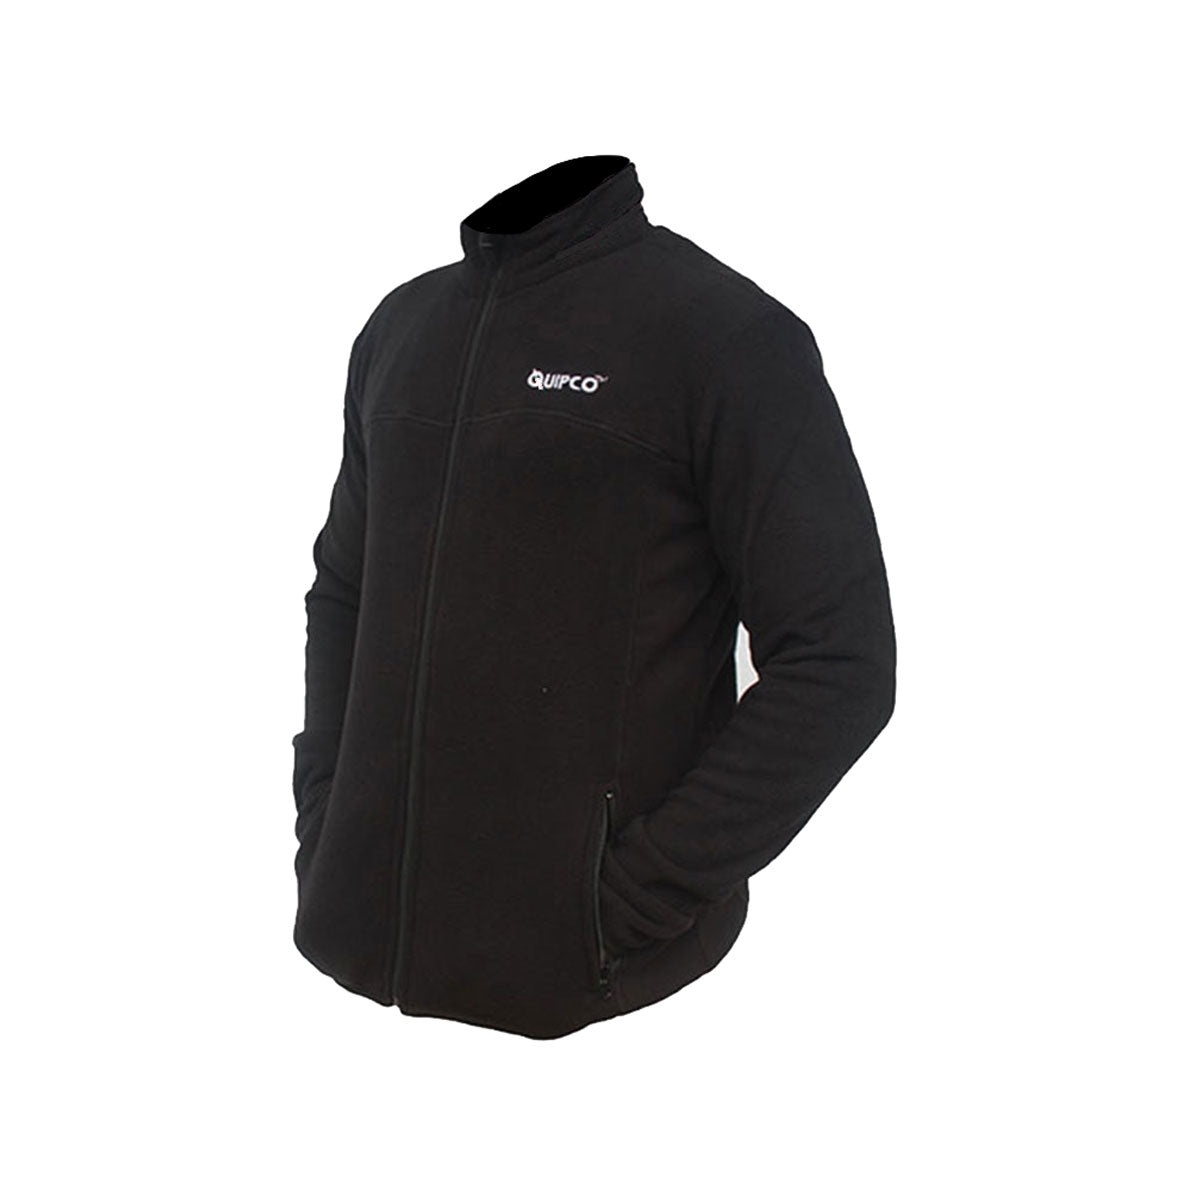 QuipCo Tundra 100 Fleece Warm Jacket (Black) - Outdoor Travel Gear 1